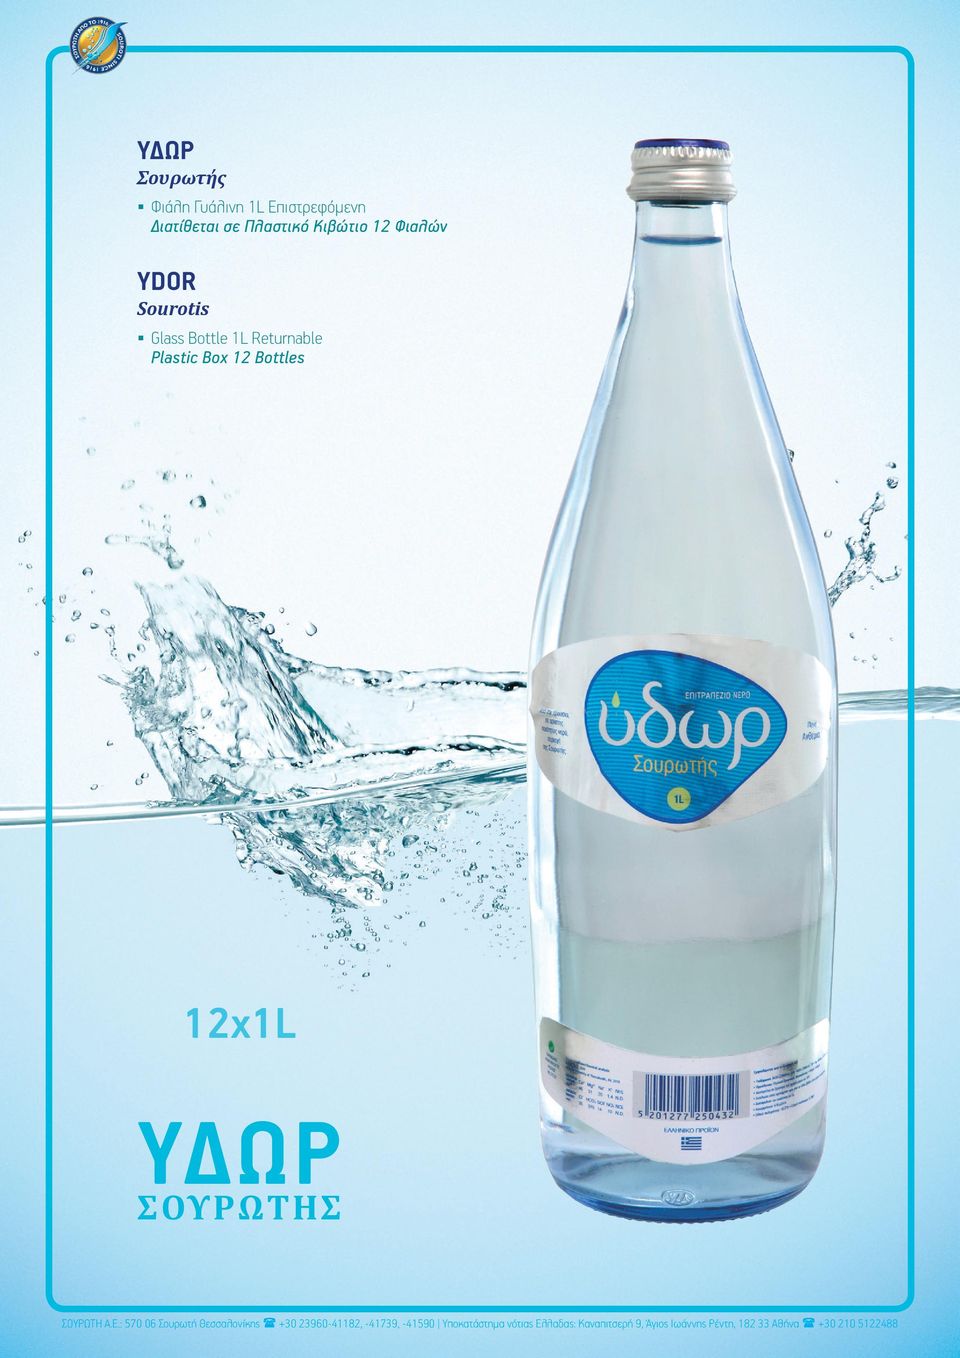 Φιαλών YDOR Sourotis Glass Bottle 1L